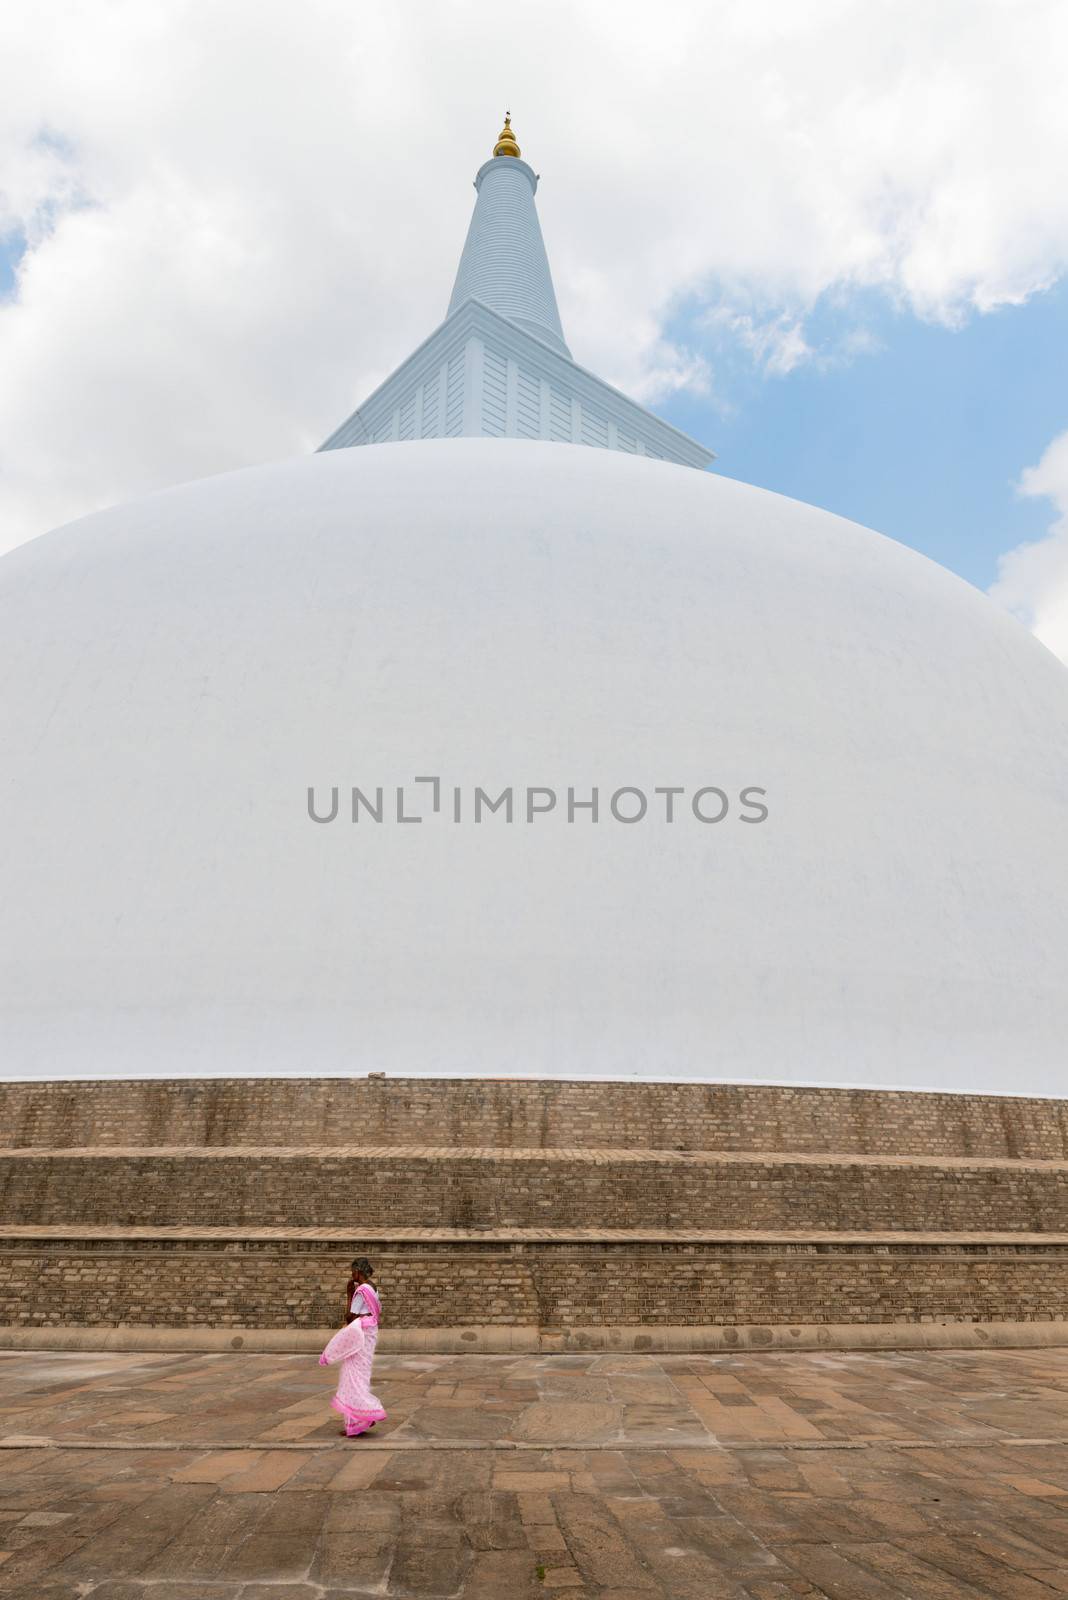 Woman in sary go round 103 m high white sacred stupa by iryna_rasko